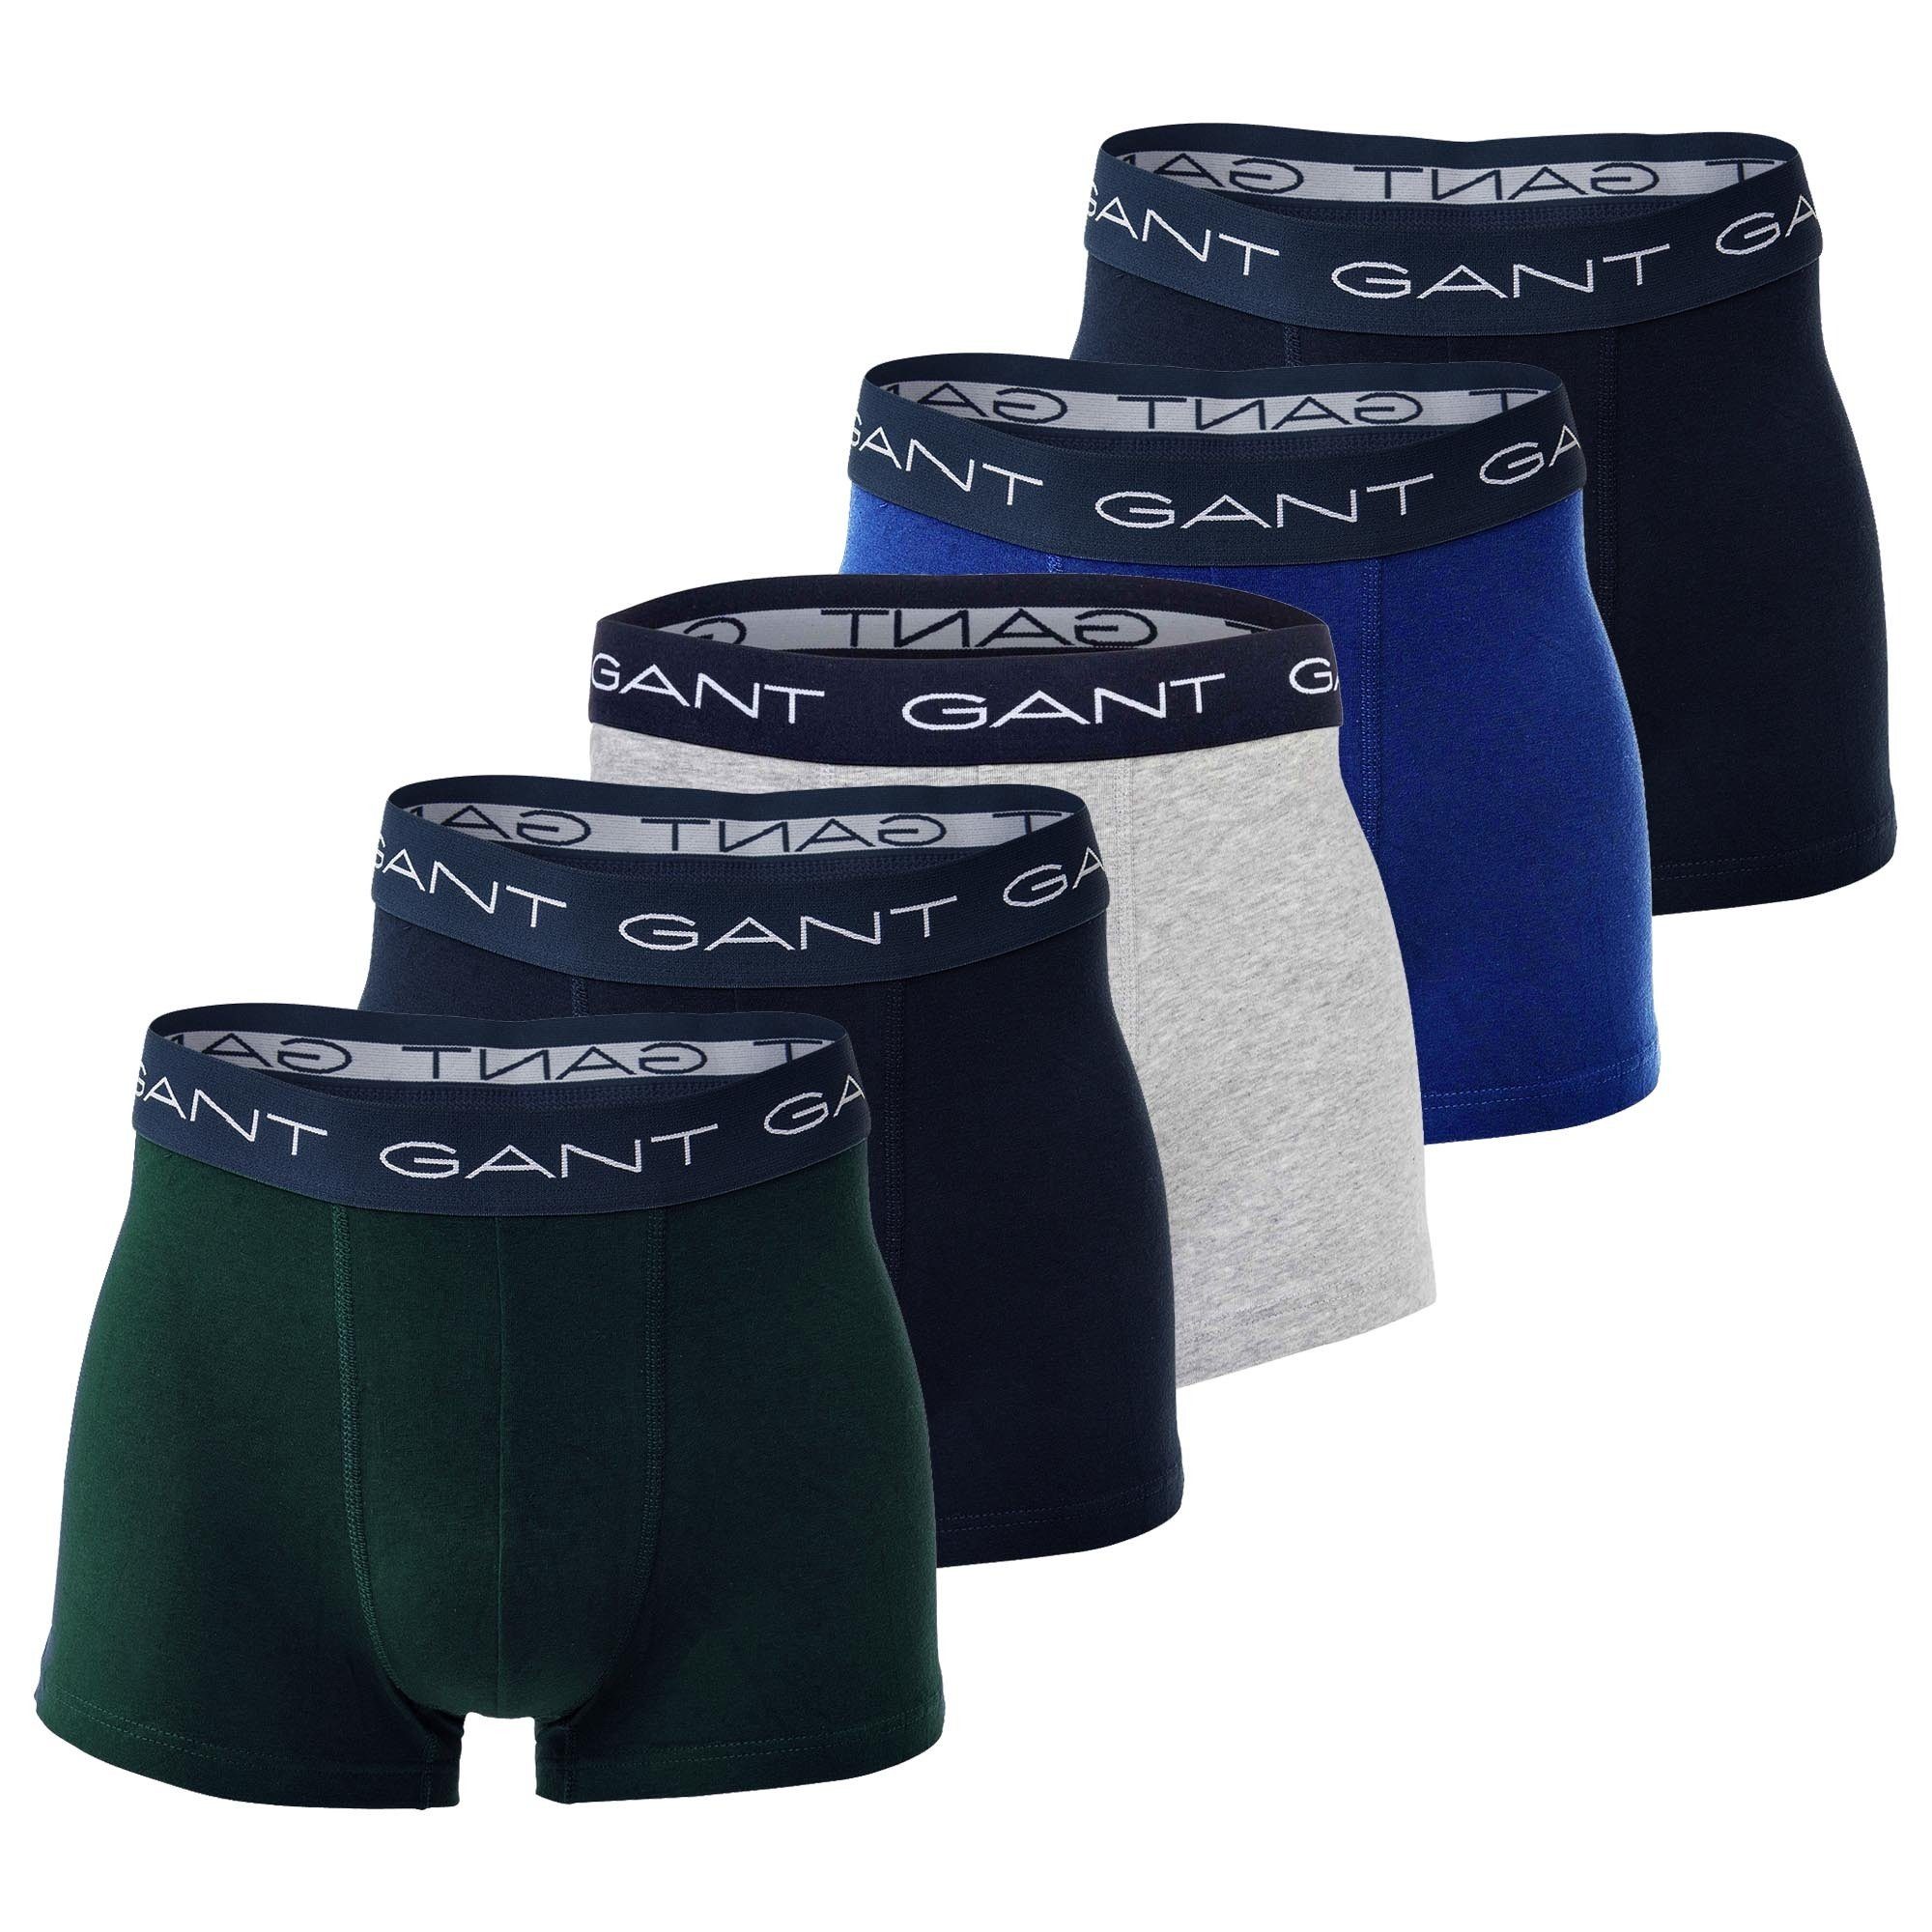 Trunks Gant Herren Boxer Blau/Grün/Grau Basic Pack 5er Boxershorts, -